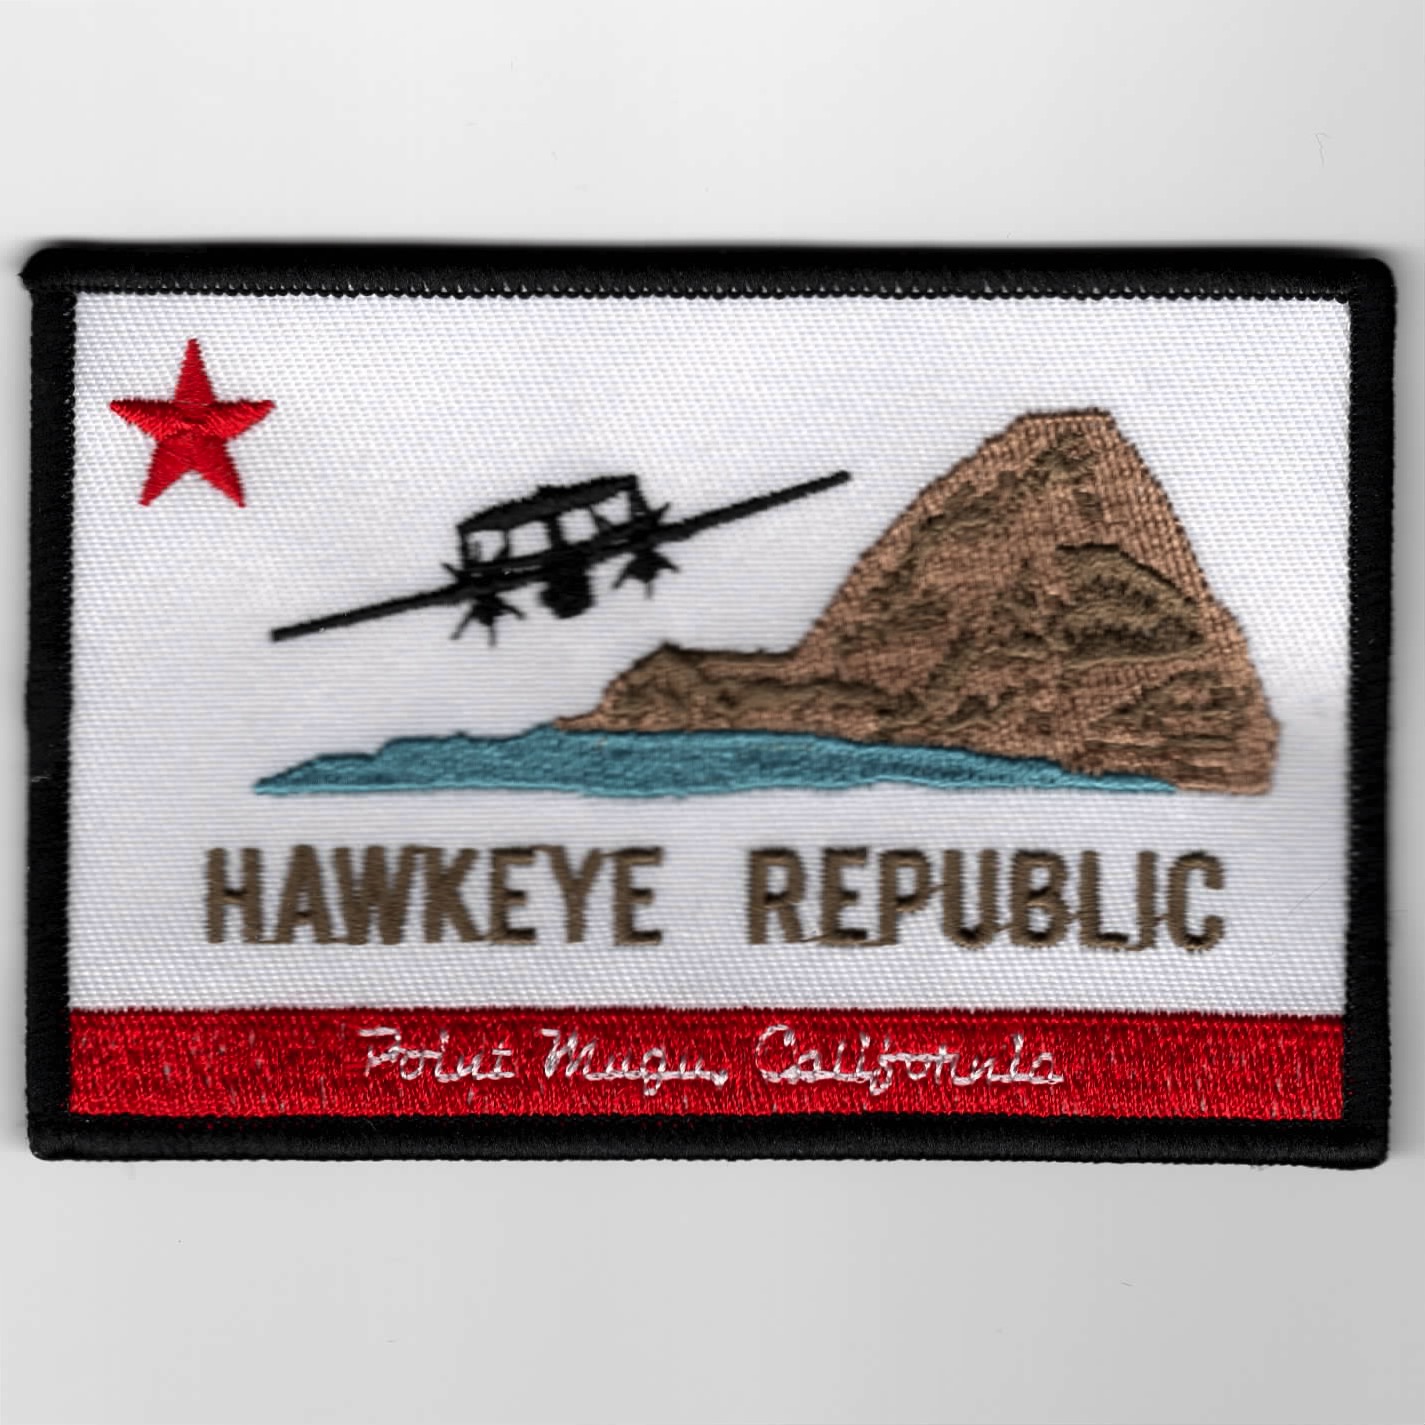 VAW-116 'HAWKEYE REPUBLIC' (Large/No V)